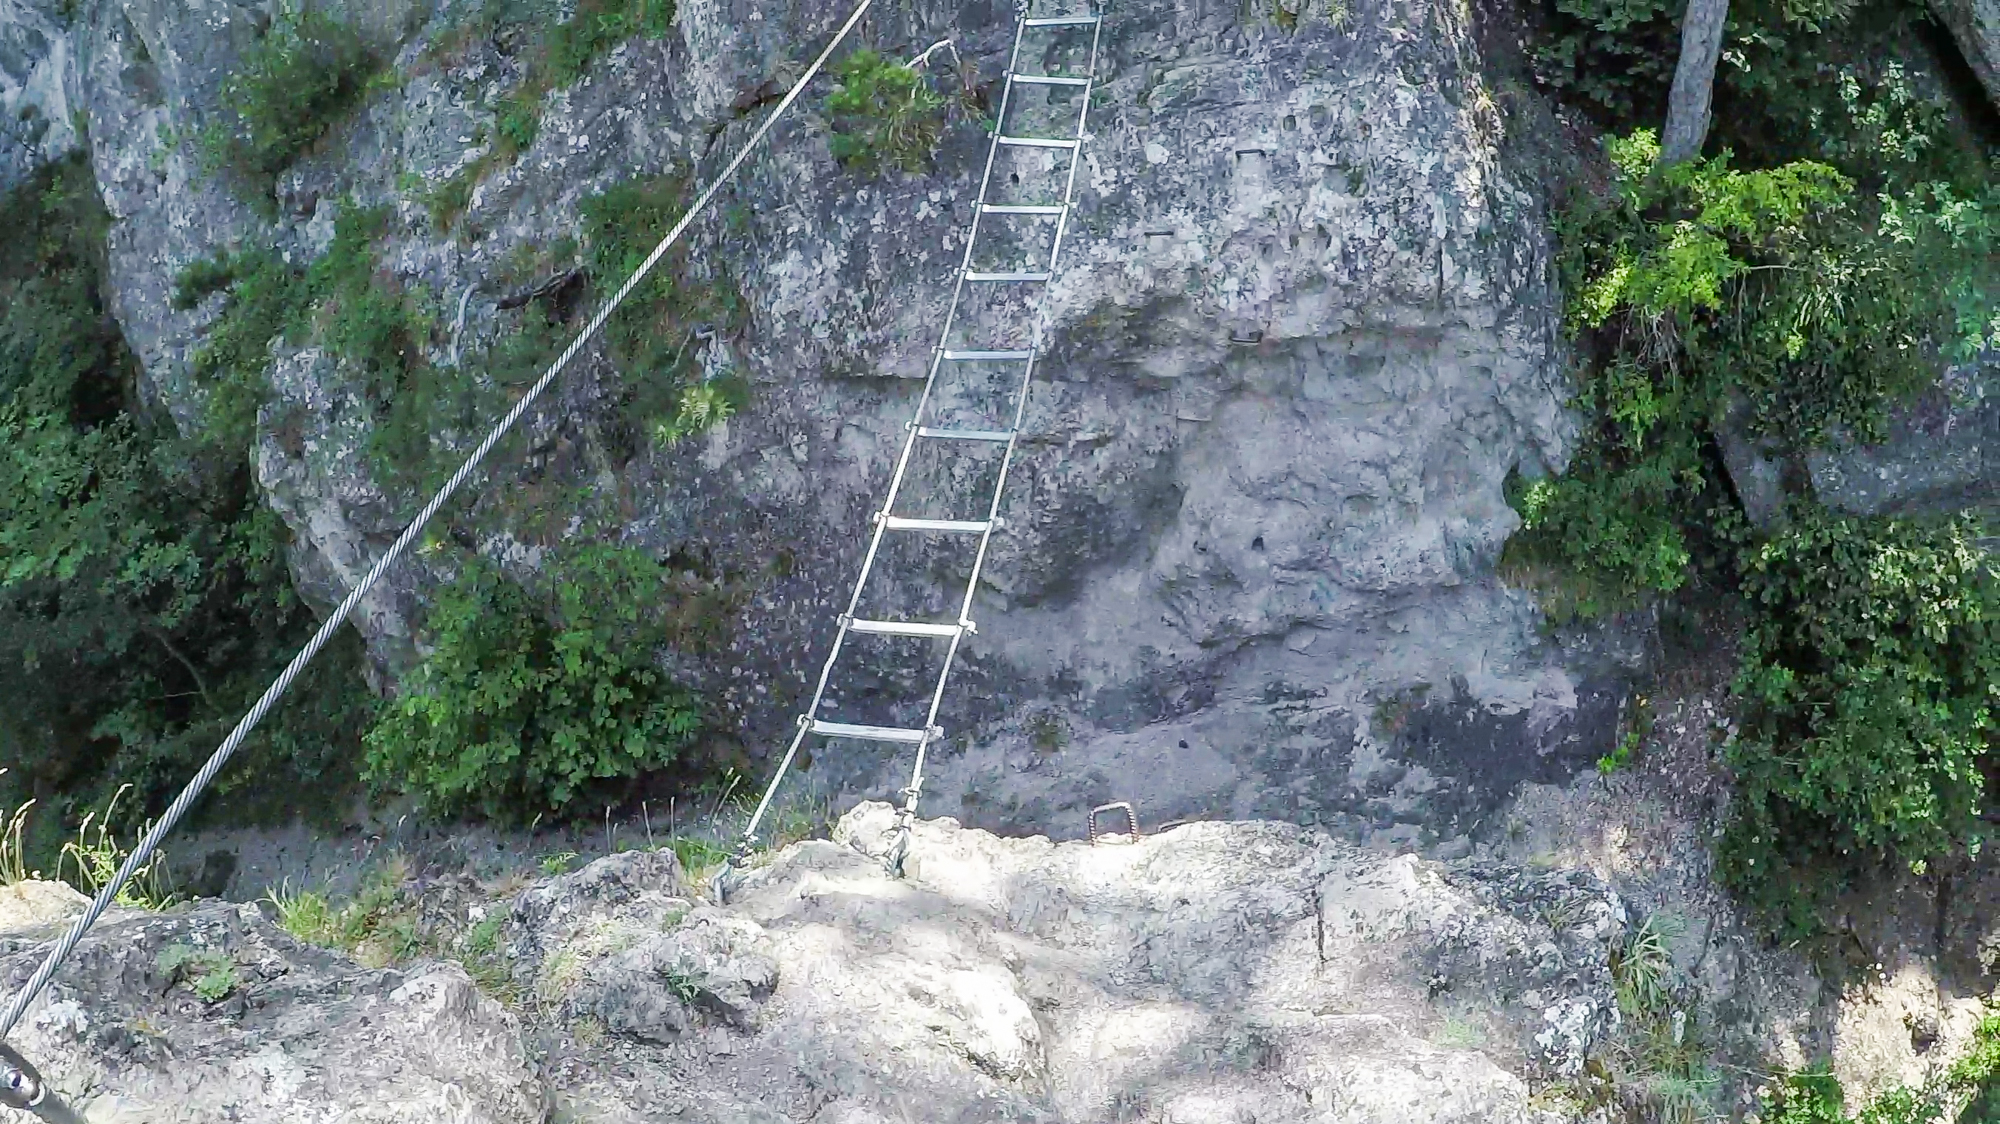 Najzaujímavejší úsek ferraty je tento rebrík.